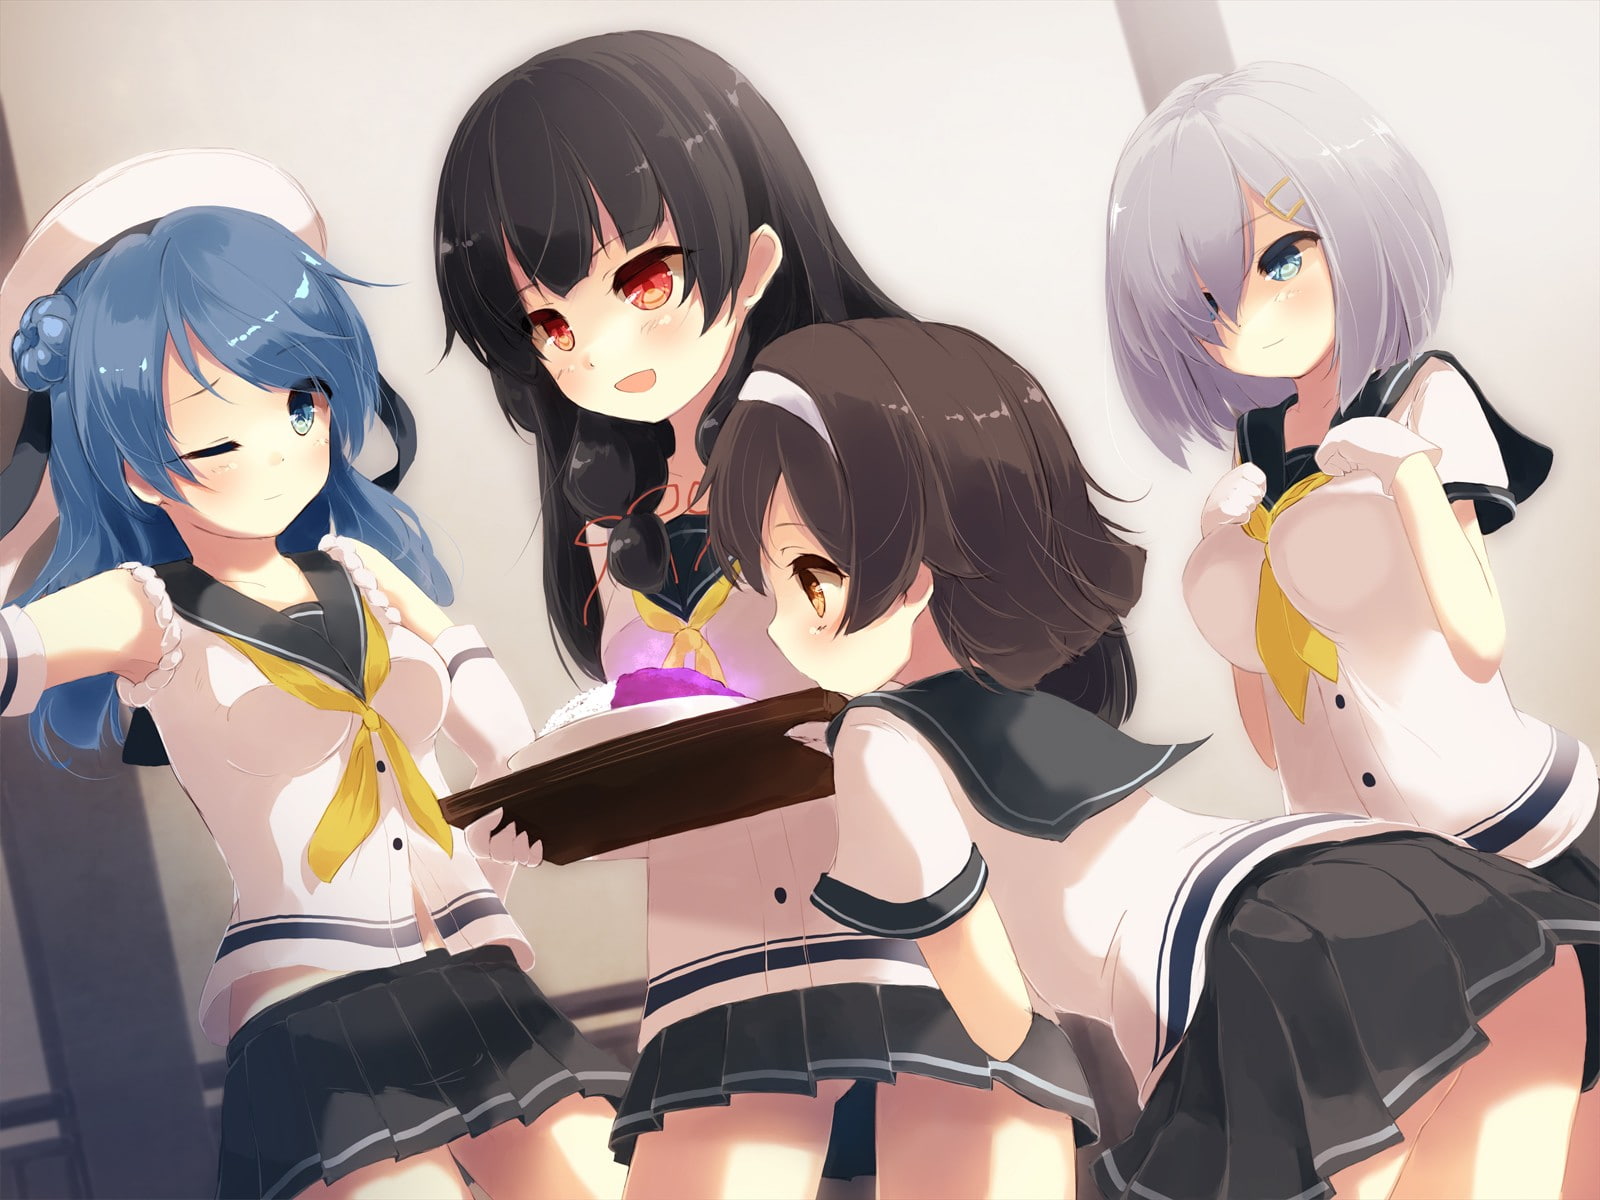 Anime Girls, Hamakaze, Isokaze, Tanikaze, Urakaze, KanColle, female wearing school uniform anime